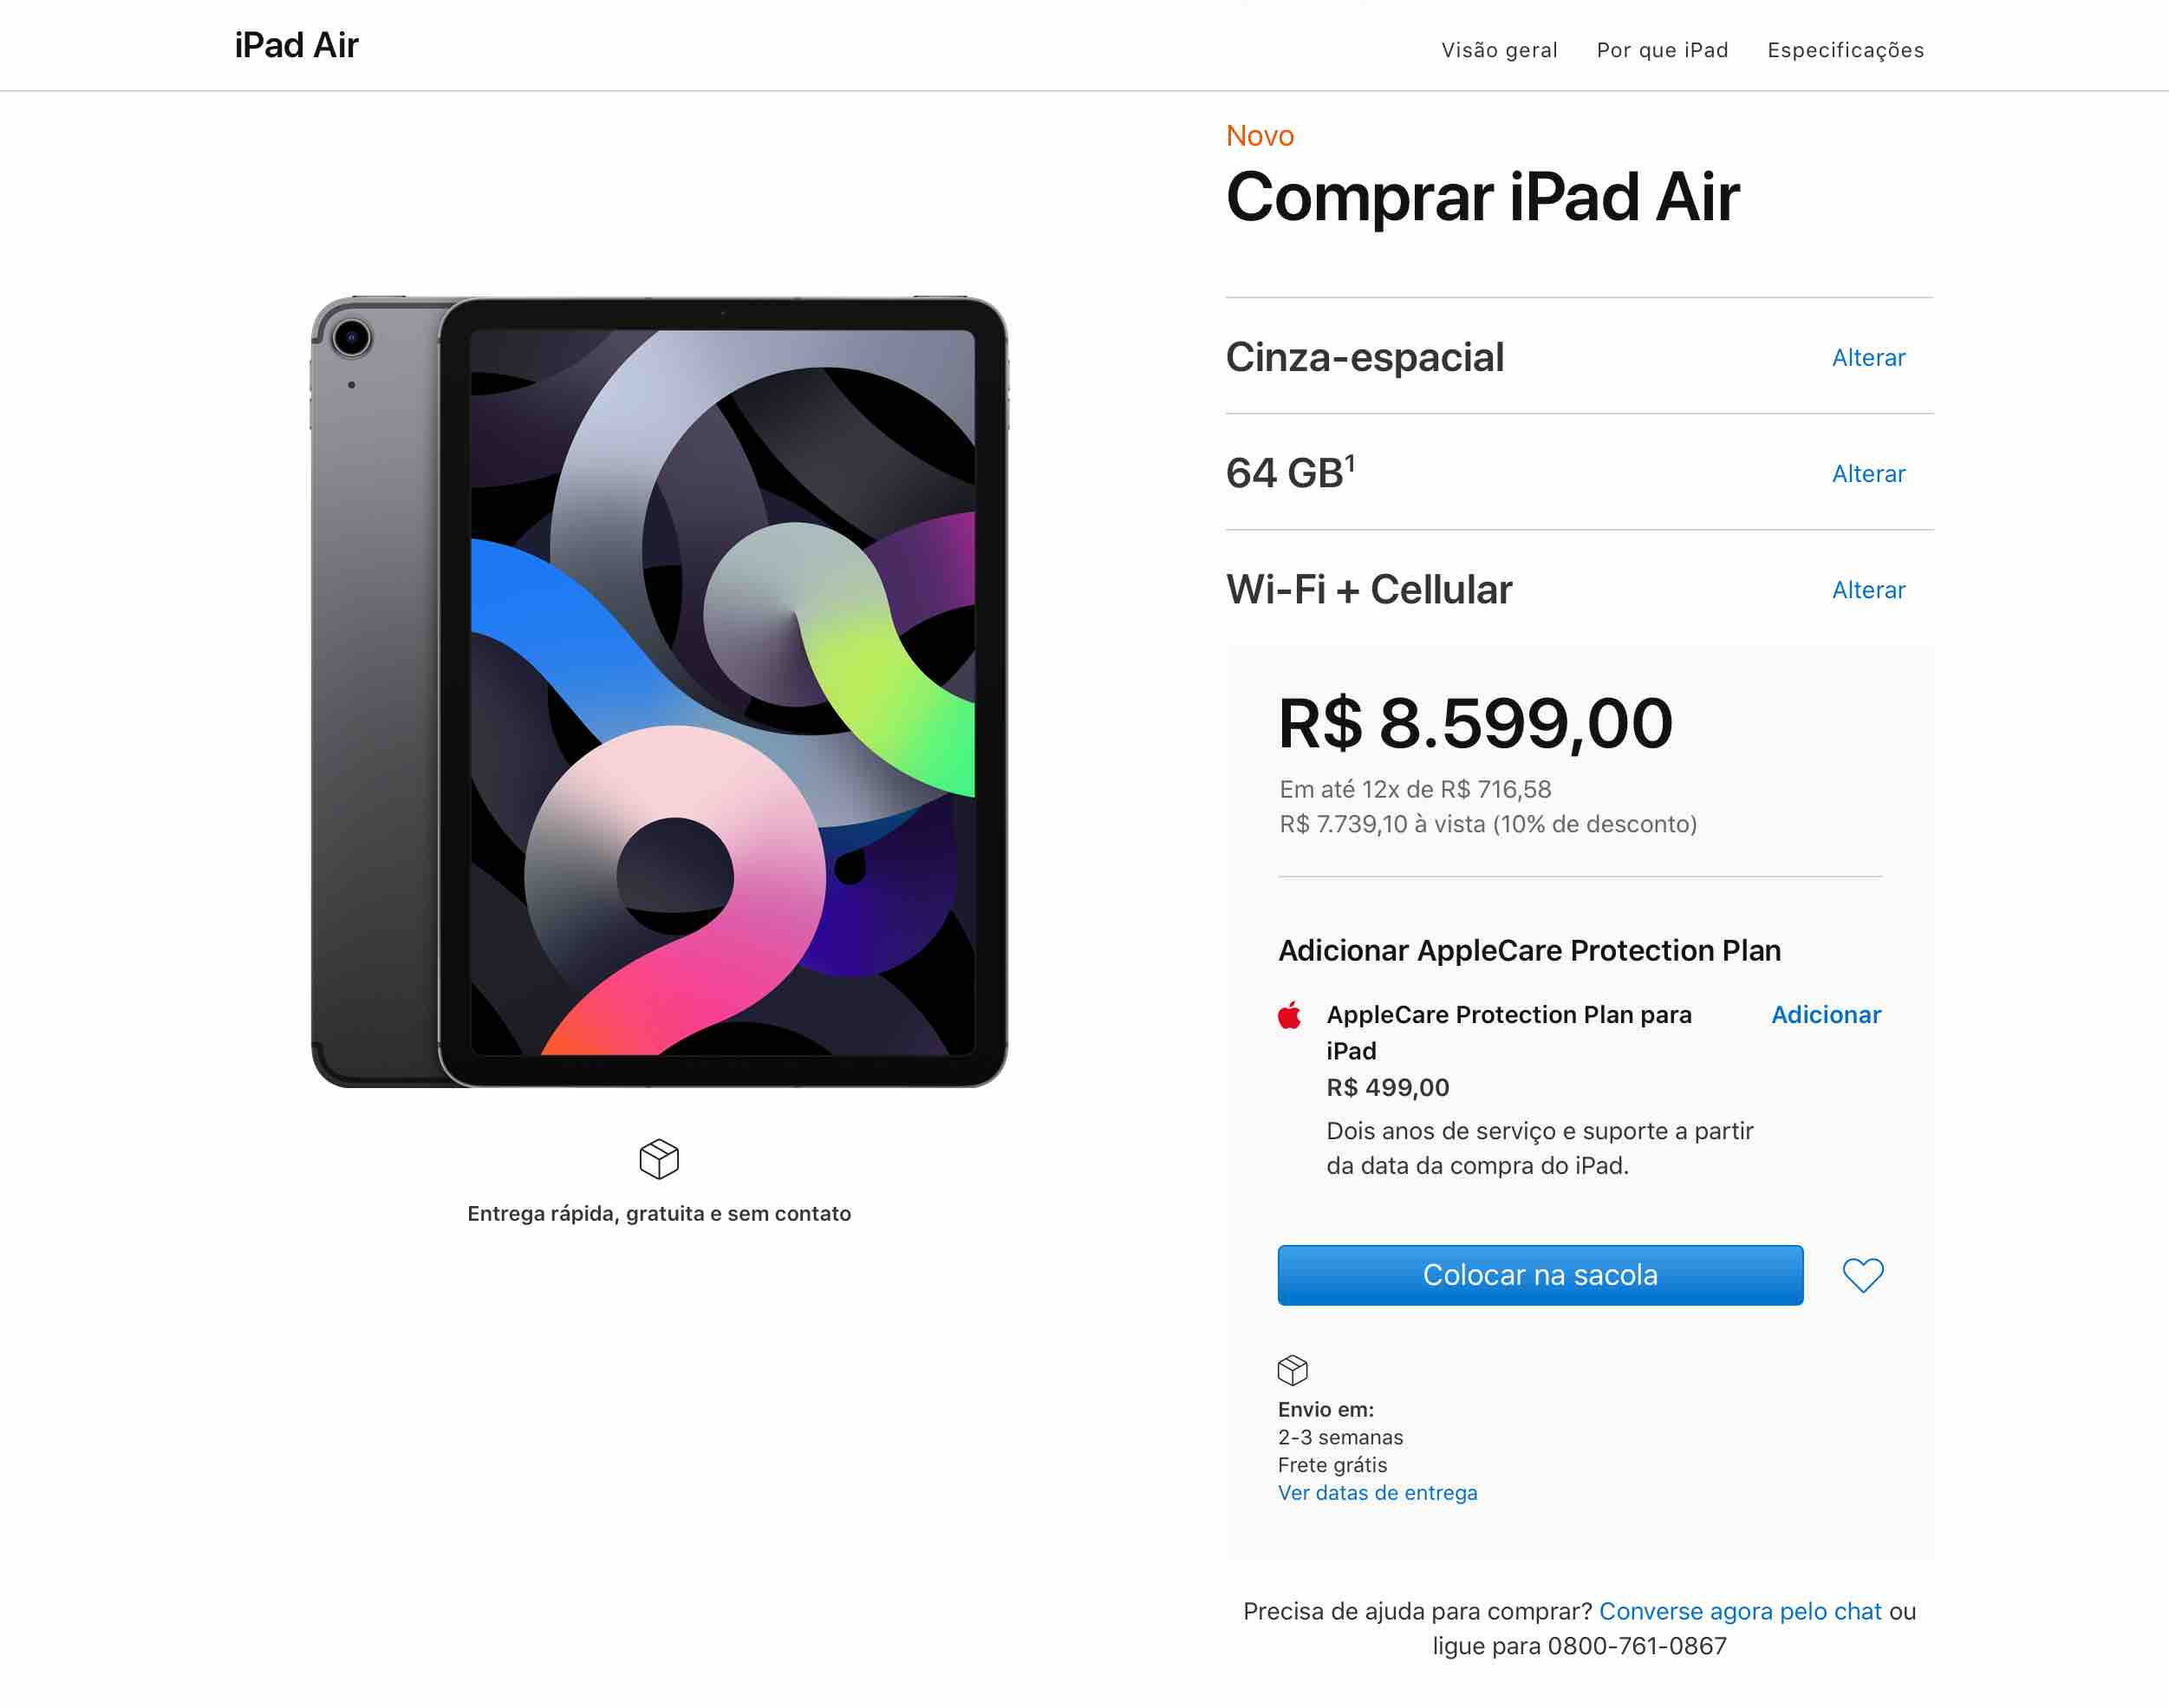 iPad Air Wi-Fi + Cellular à venda no Brasil